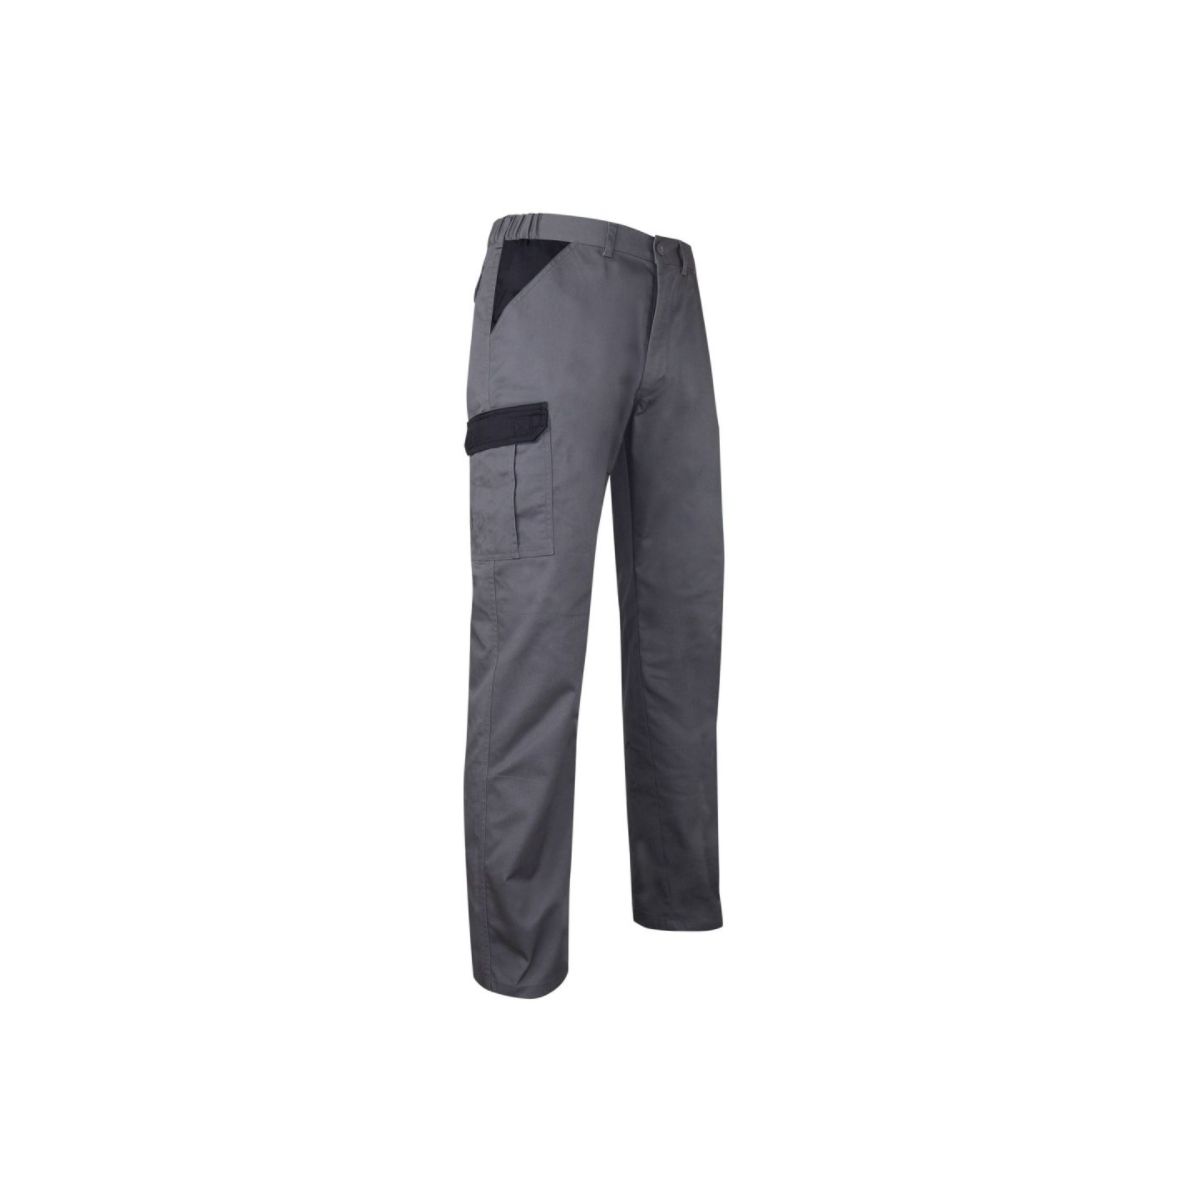 Pantalon de travail PERCEUSE multipoches gris/noir - LMA - Taille 46